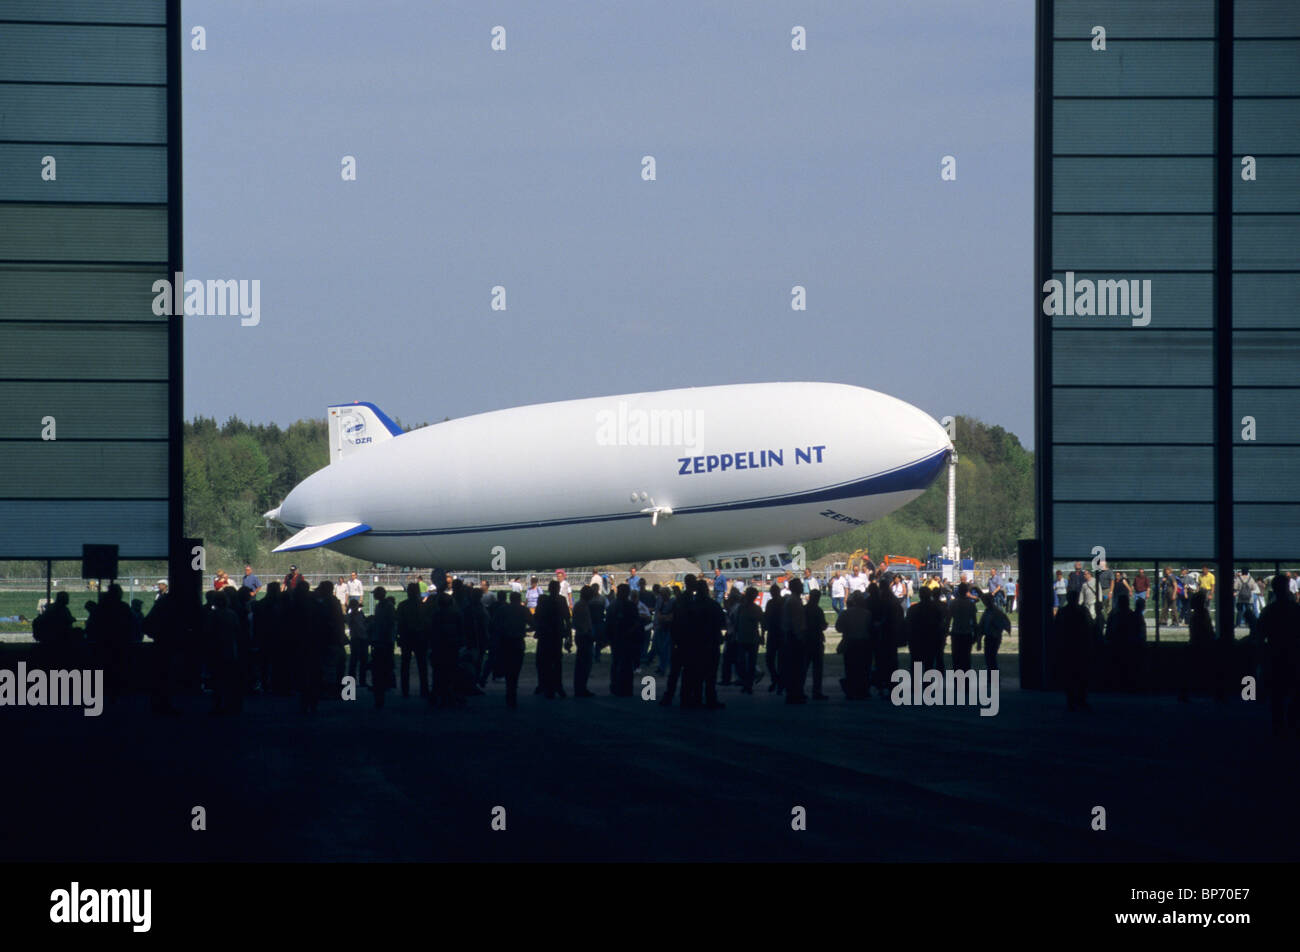 Gesehen von seinem Hangartüren, modernen Luftschiff Luftschiff Zeppelin NT, Flughafen Friedrichshafen, Baden-Württemberg, Deutschland Stockfoto